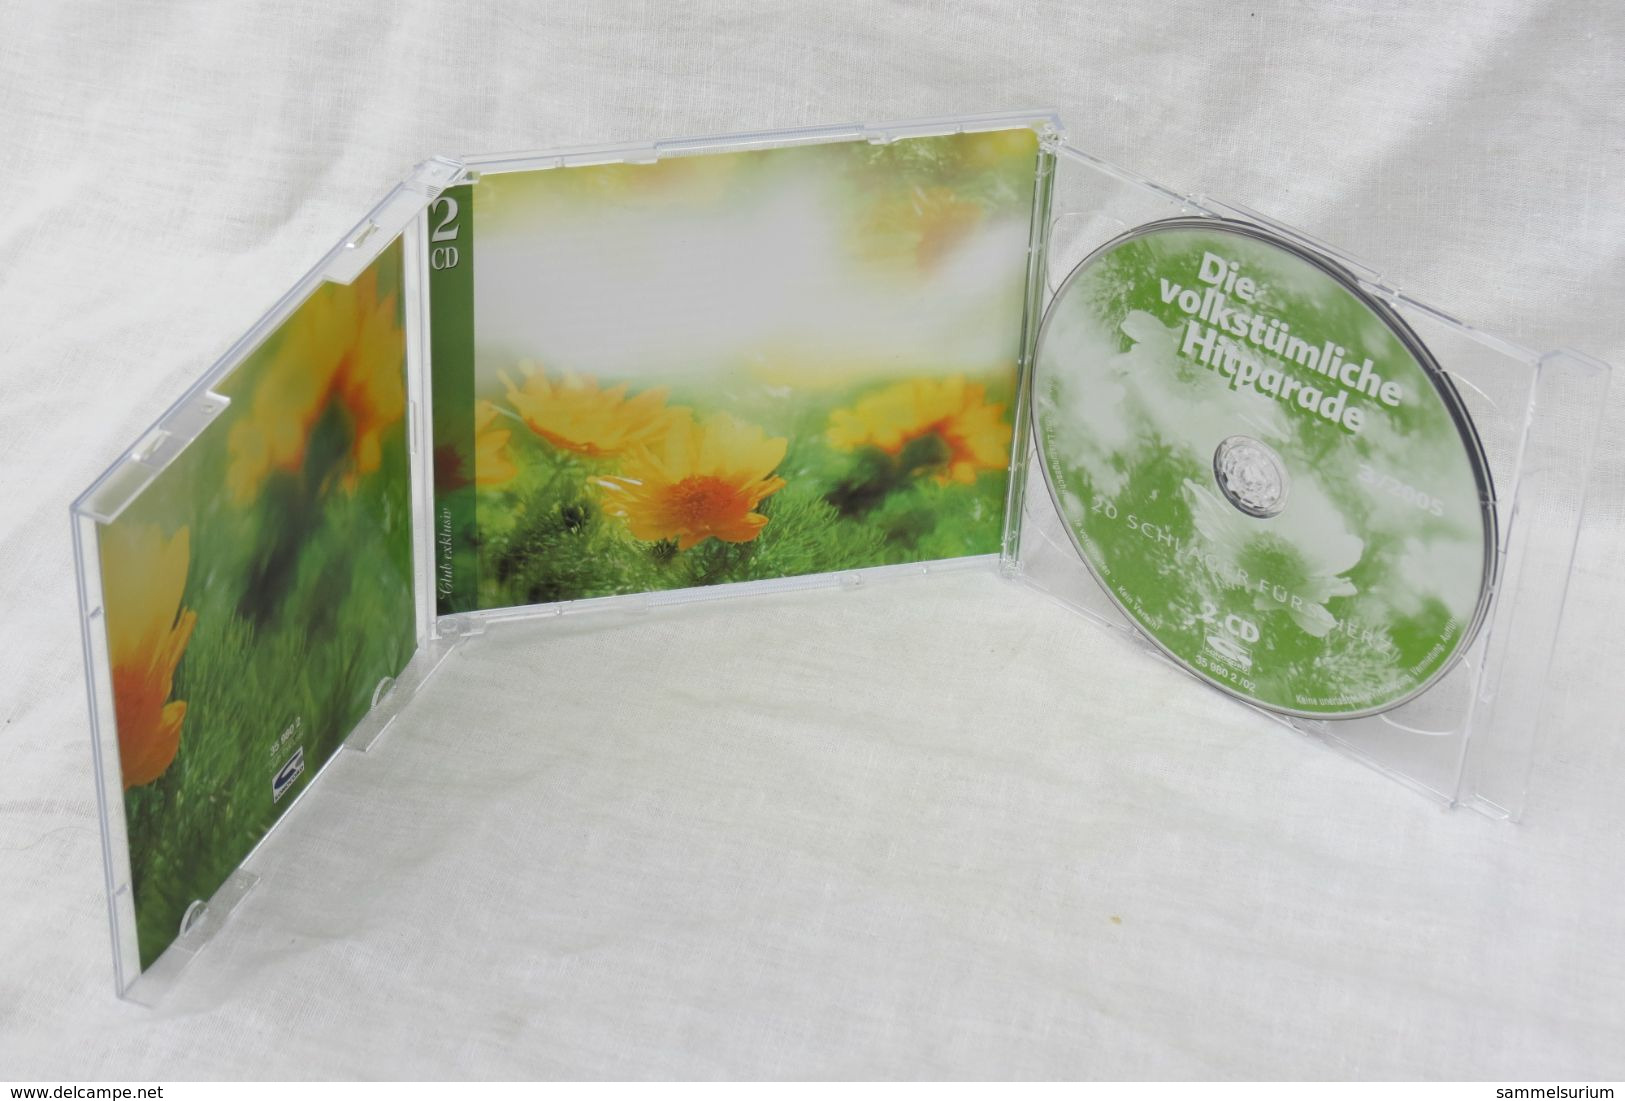 2 CDs "Die Volkstümliche Hitparade" 40 Schlager Fürs Herz, Ausgabe 3/2005 - Sonstige - Deutsche Musik